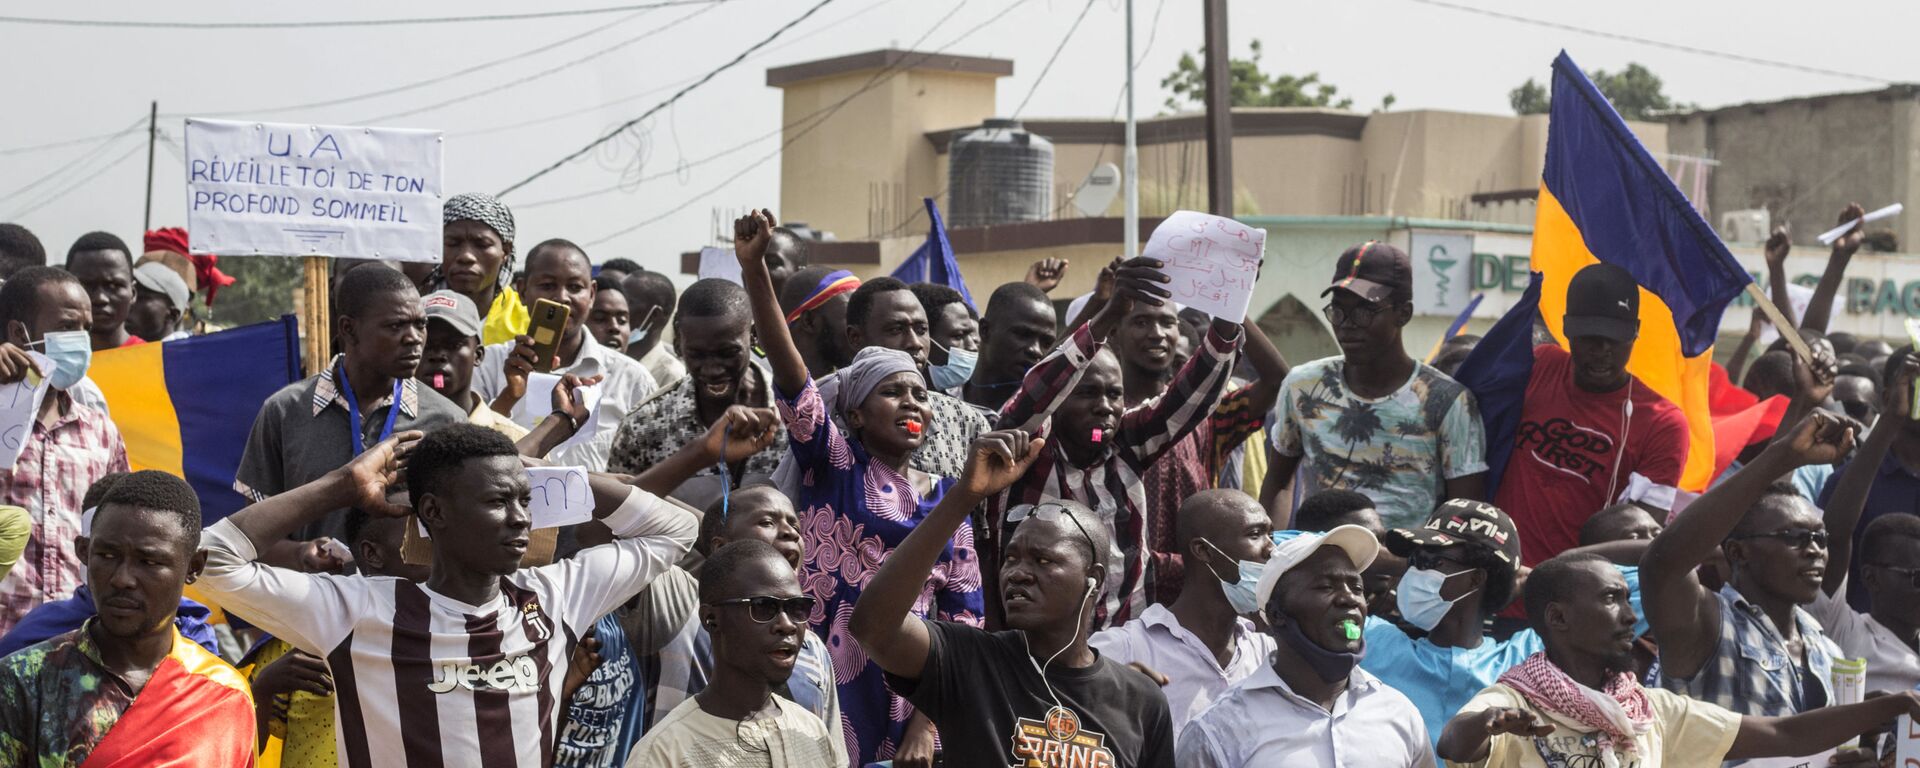 Manifestation à N'Djaména contre la junte qui dirige le Tchad depuis la mort d'Idriss Déby, le 11 septembre 2021 - Sputnik Afrique, 1920, 15.09.2021